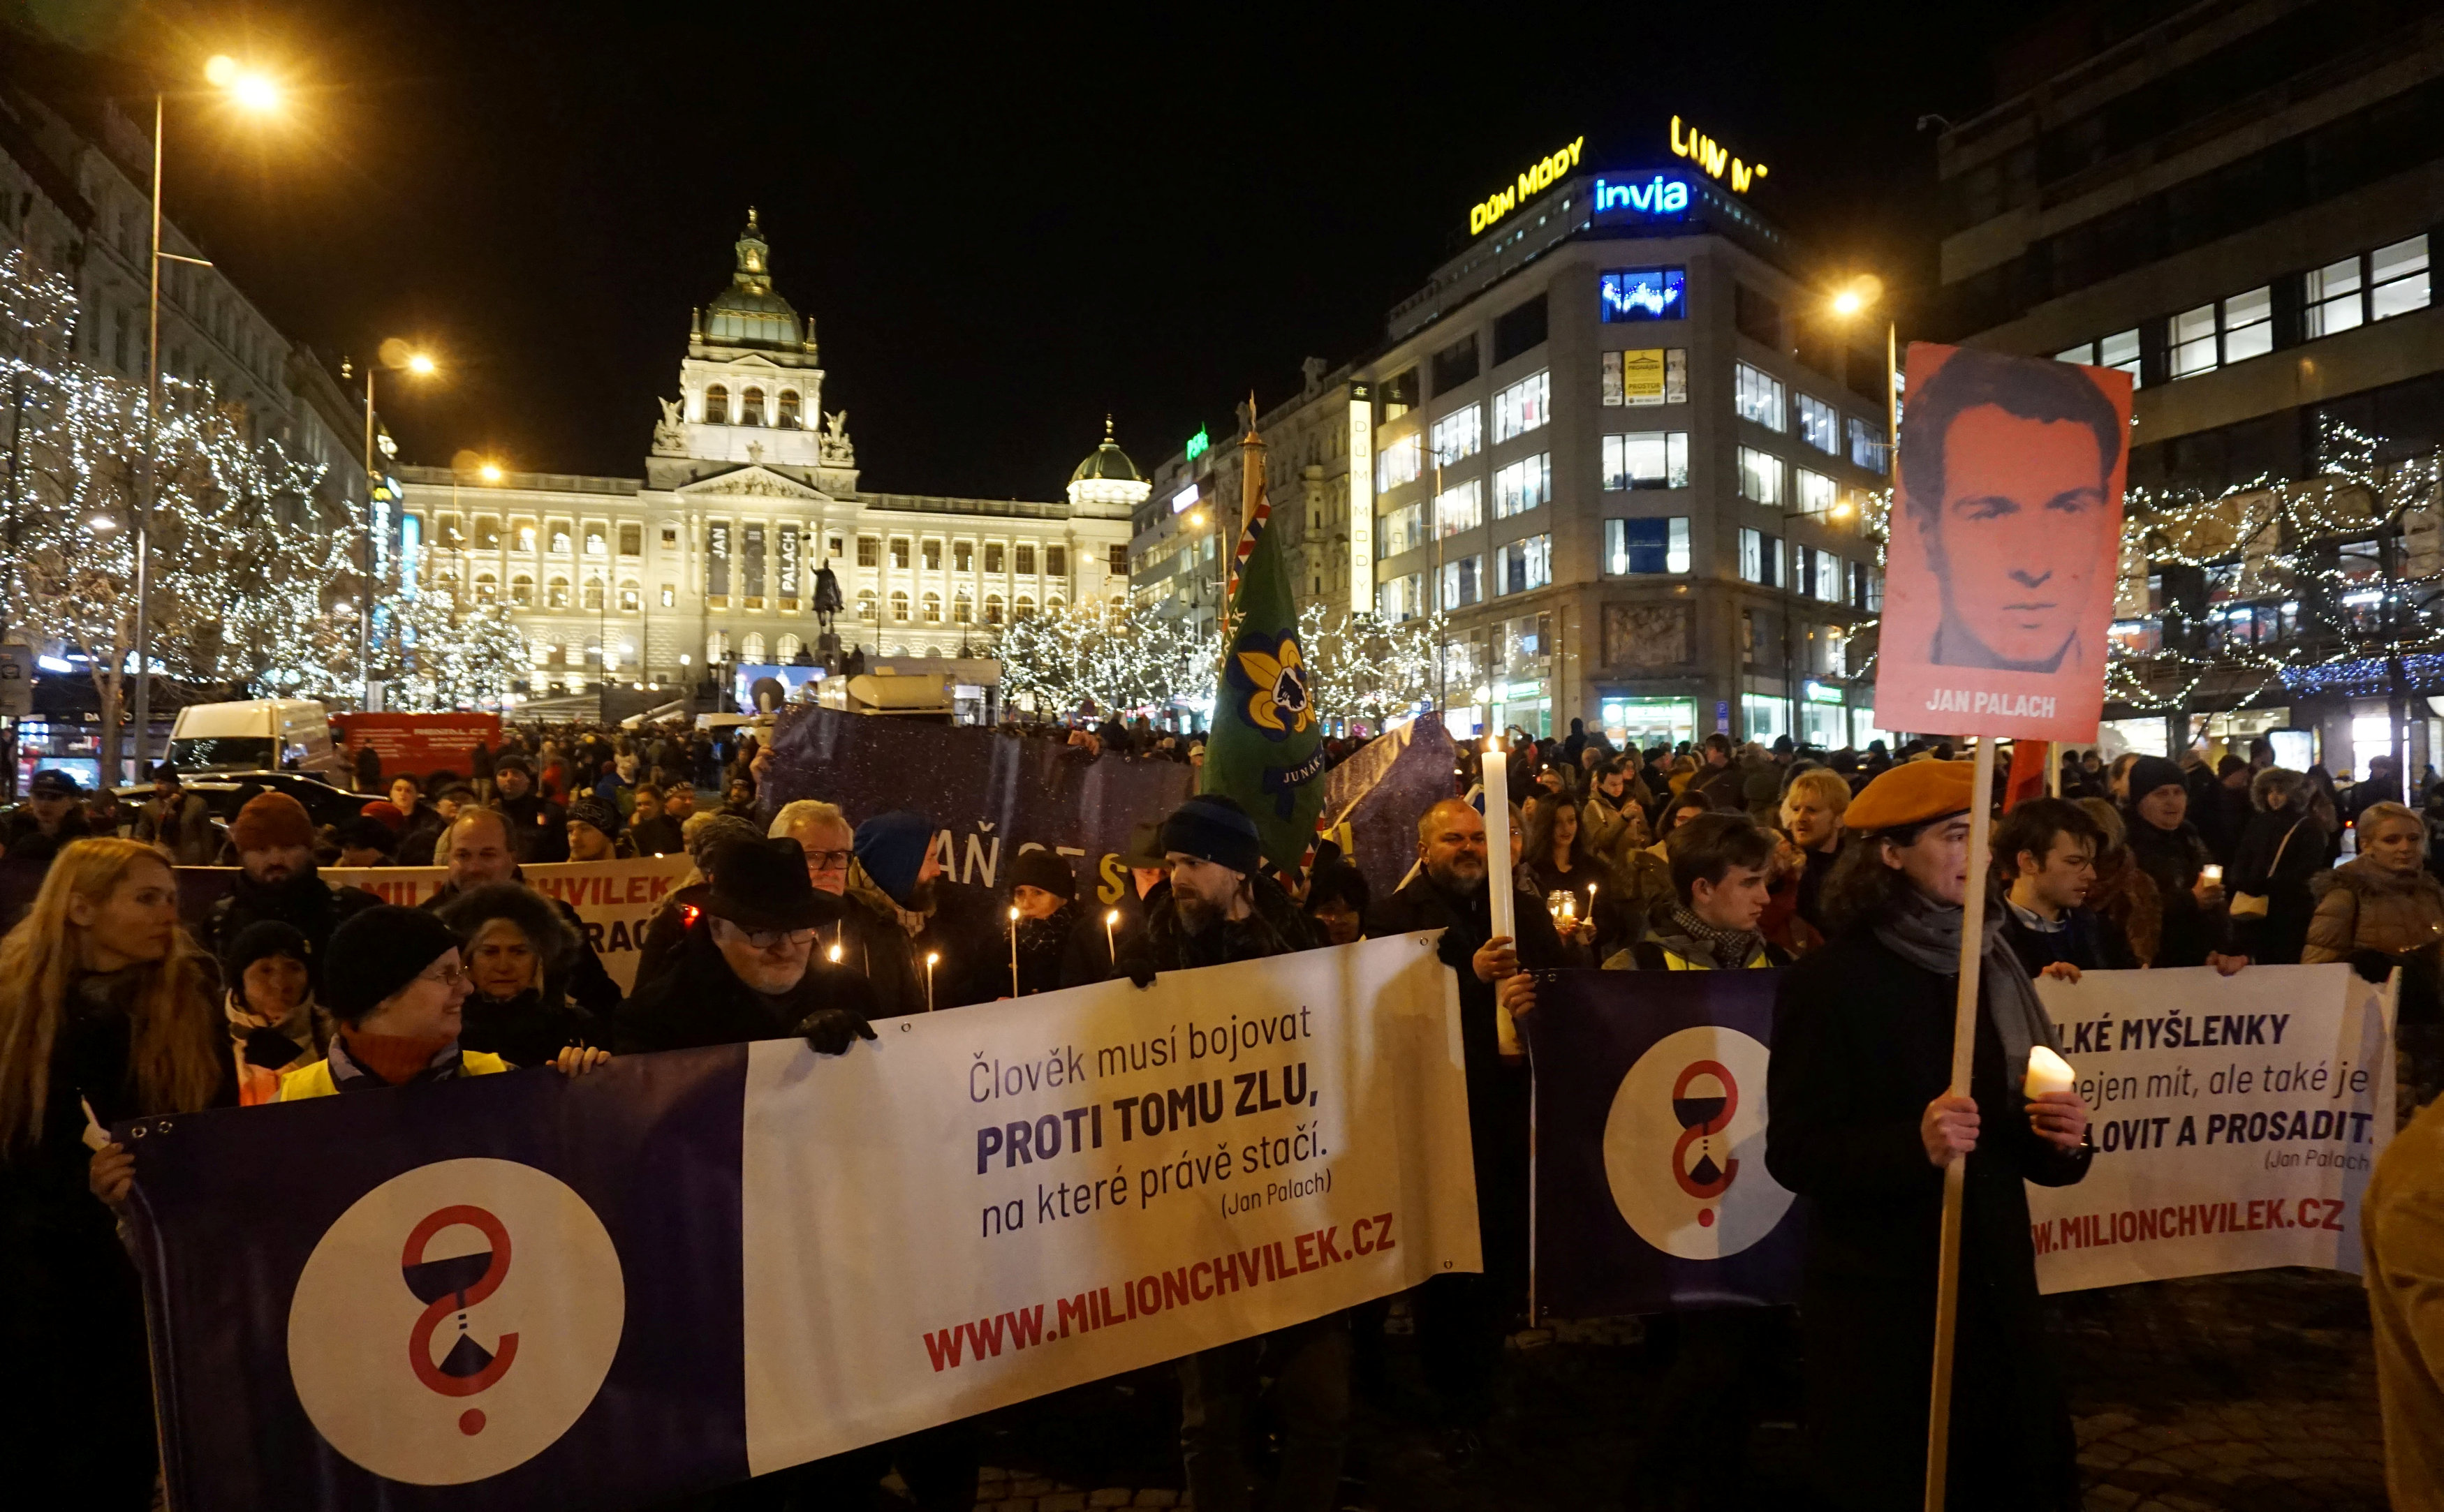 La gente marchó a la Plaza Wenceslao de Praga, donde Jan Palach de inmoló a lo bonzo, para recordarlo en el aniversario de su muerte en 2019 (REUTERS)